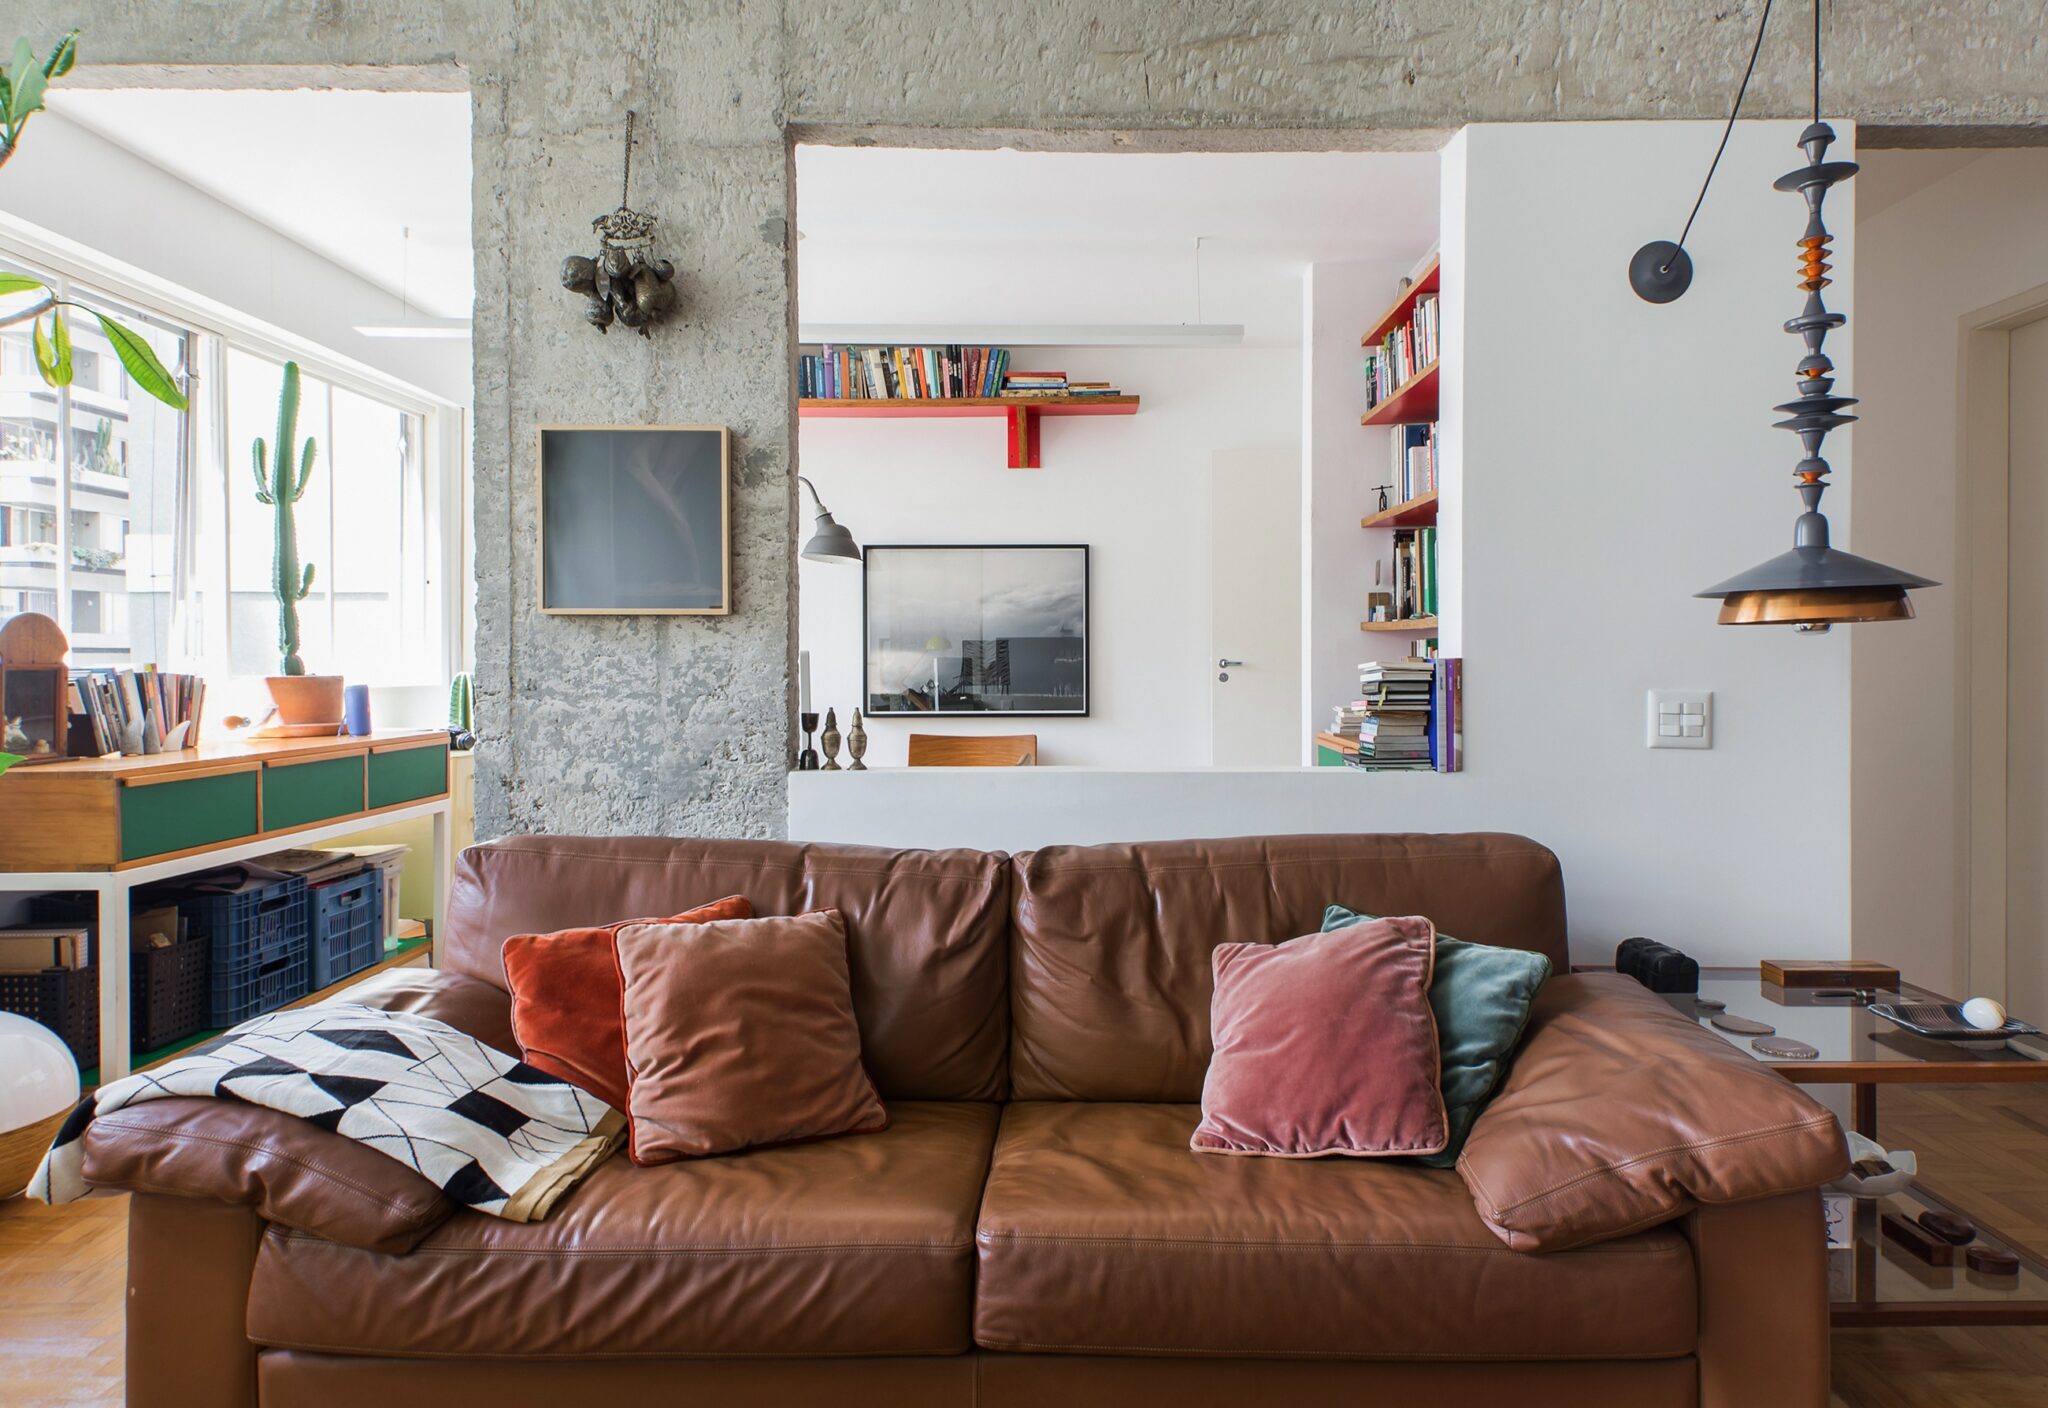 Apartamento reformado com cozinha integrada e decoração colorida